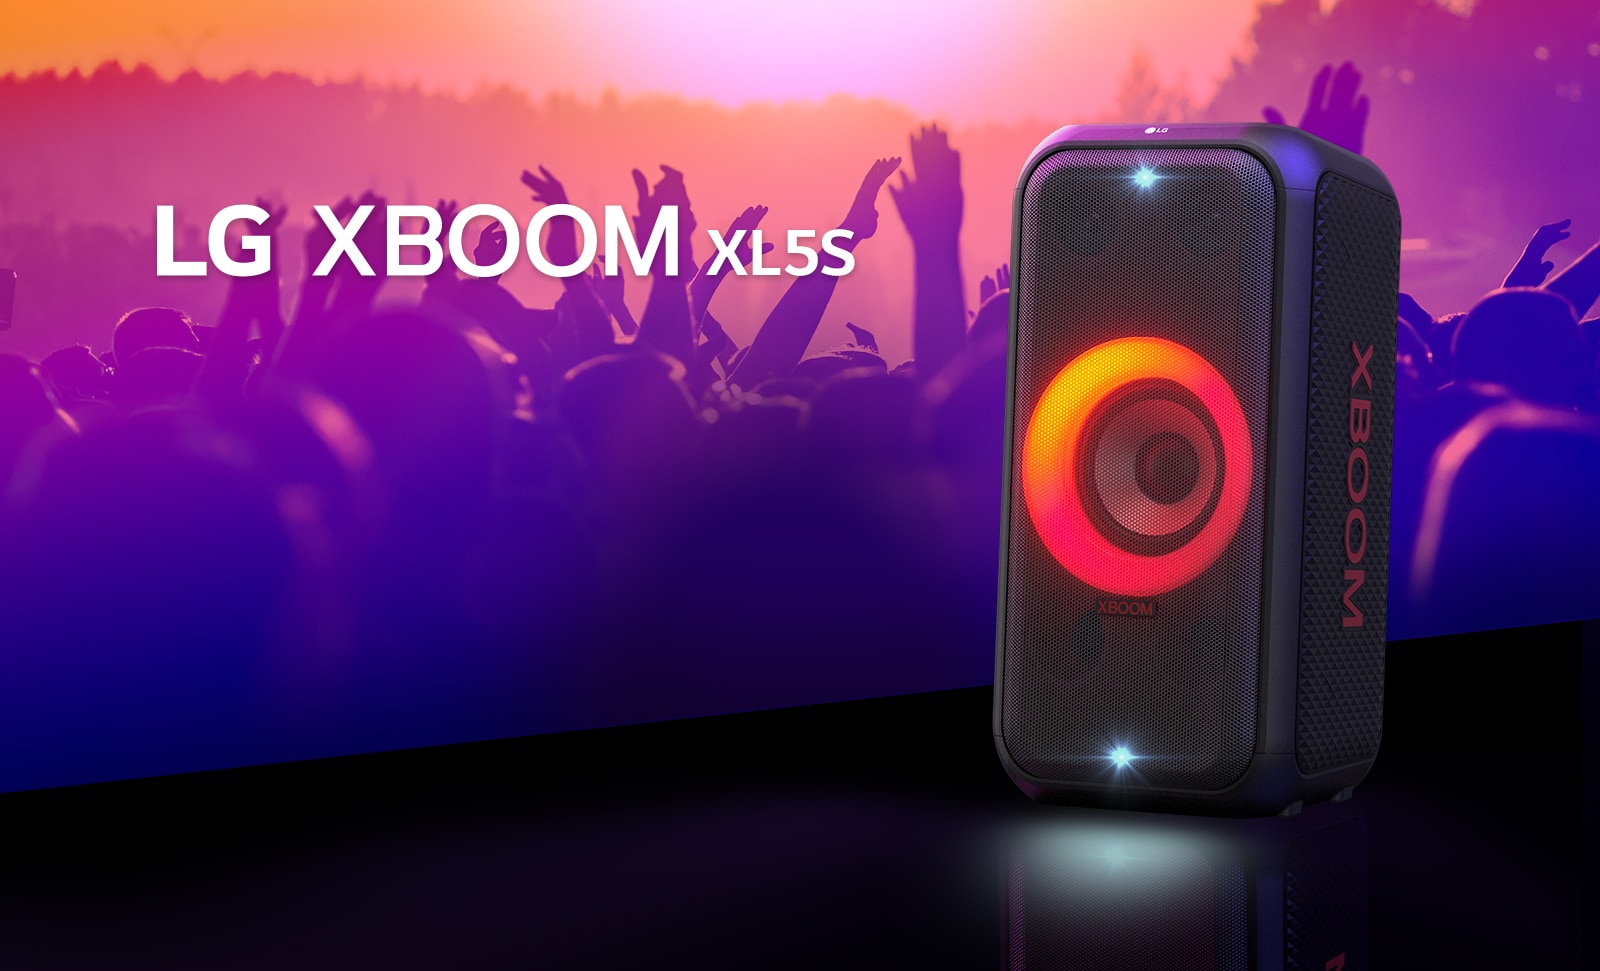 LG XBOOM XL5S se coloca en el escenario con una iluminación degradada de rojo a naranja encendida. Detrás del escenario, la gente disfruta de la música.